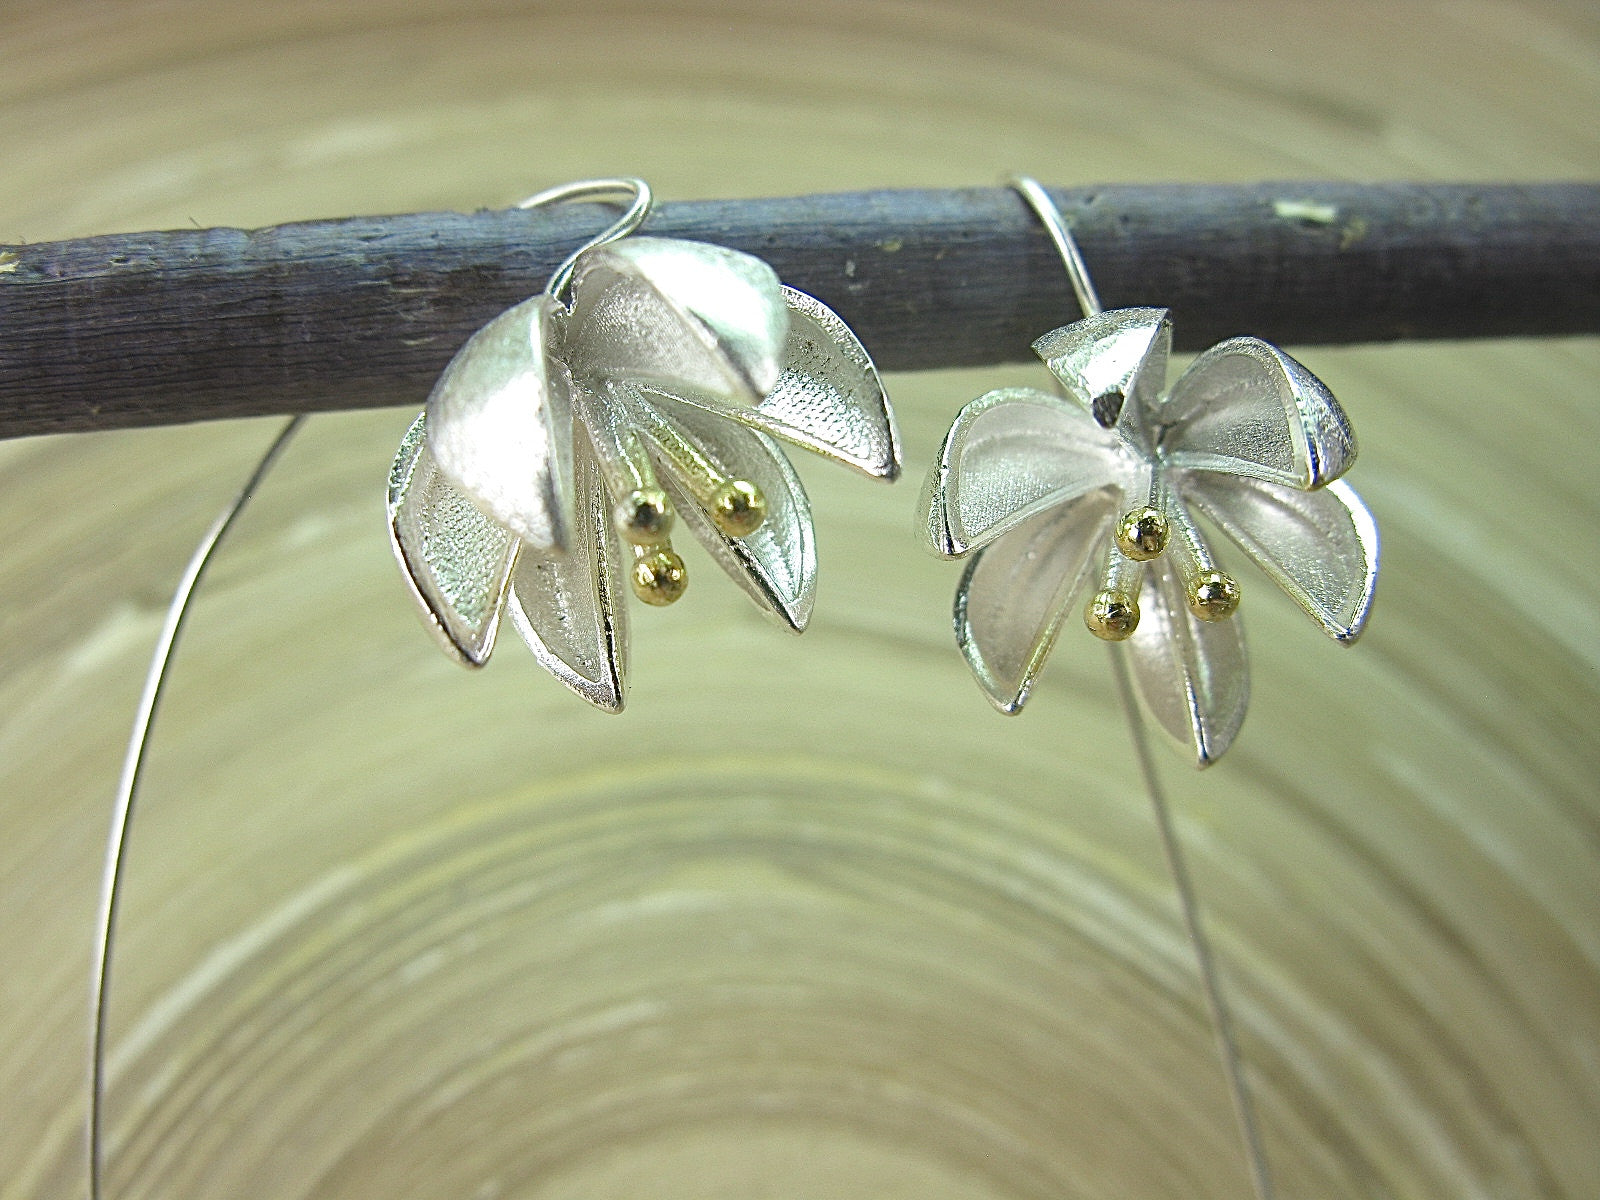 Flower Vermeil 925 Sterling Silver Long Ear Wire Earrings Earrings - Faith Owl